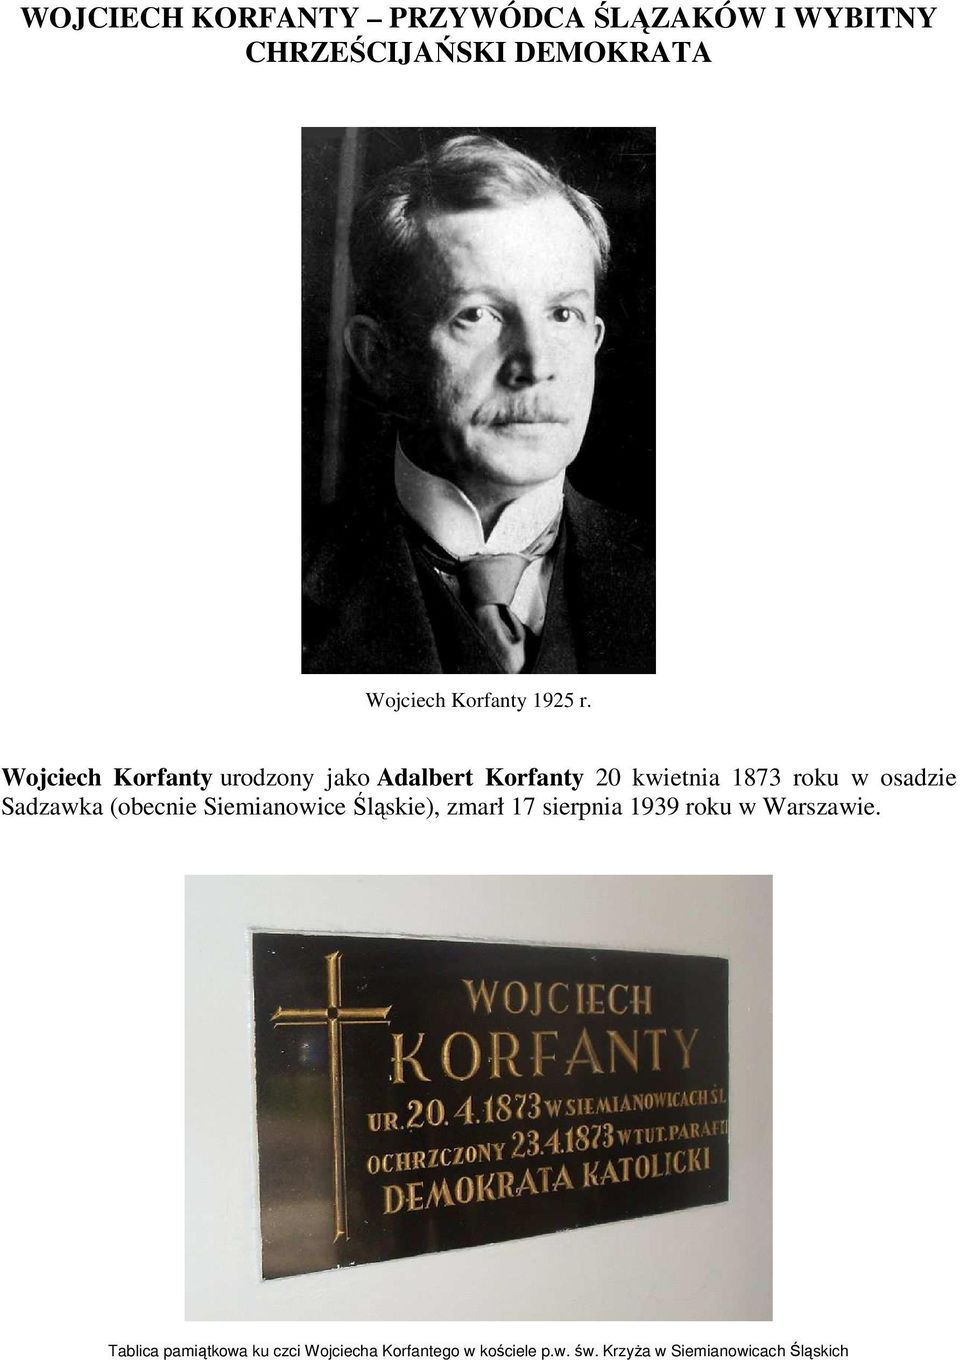 Wojciech Korfanty urodzony jako Adalbert Korfanty 20 kwietnia 1873 roku w osadzie Sadzawka